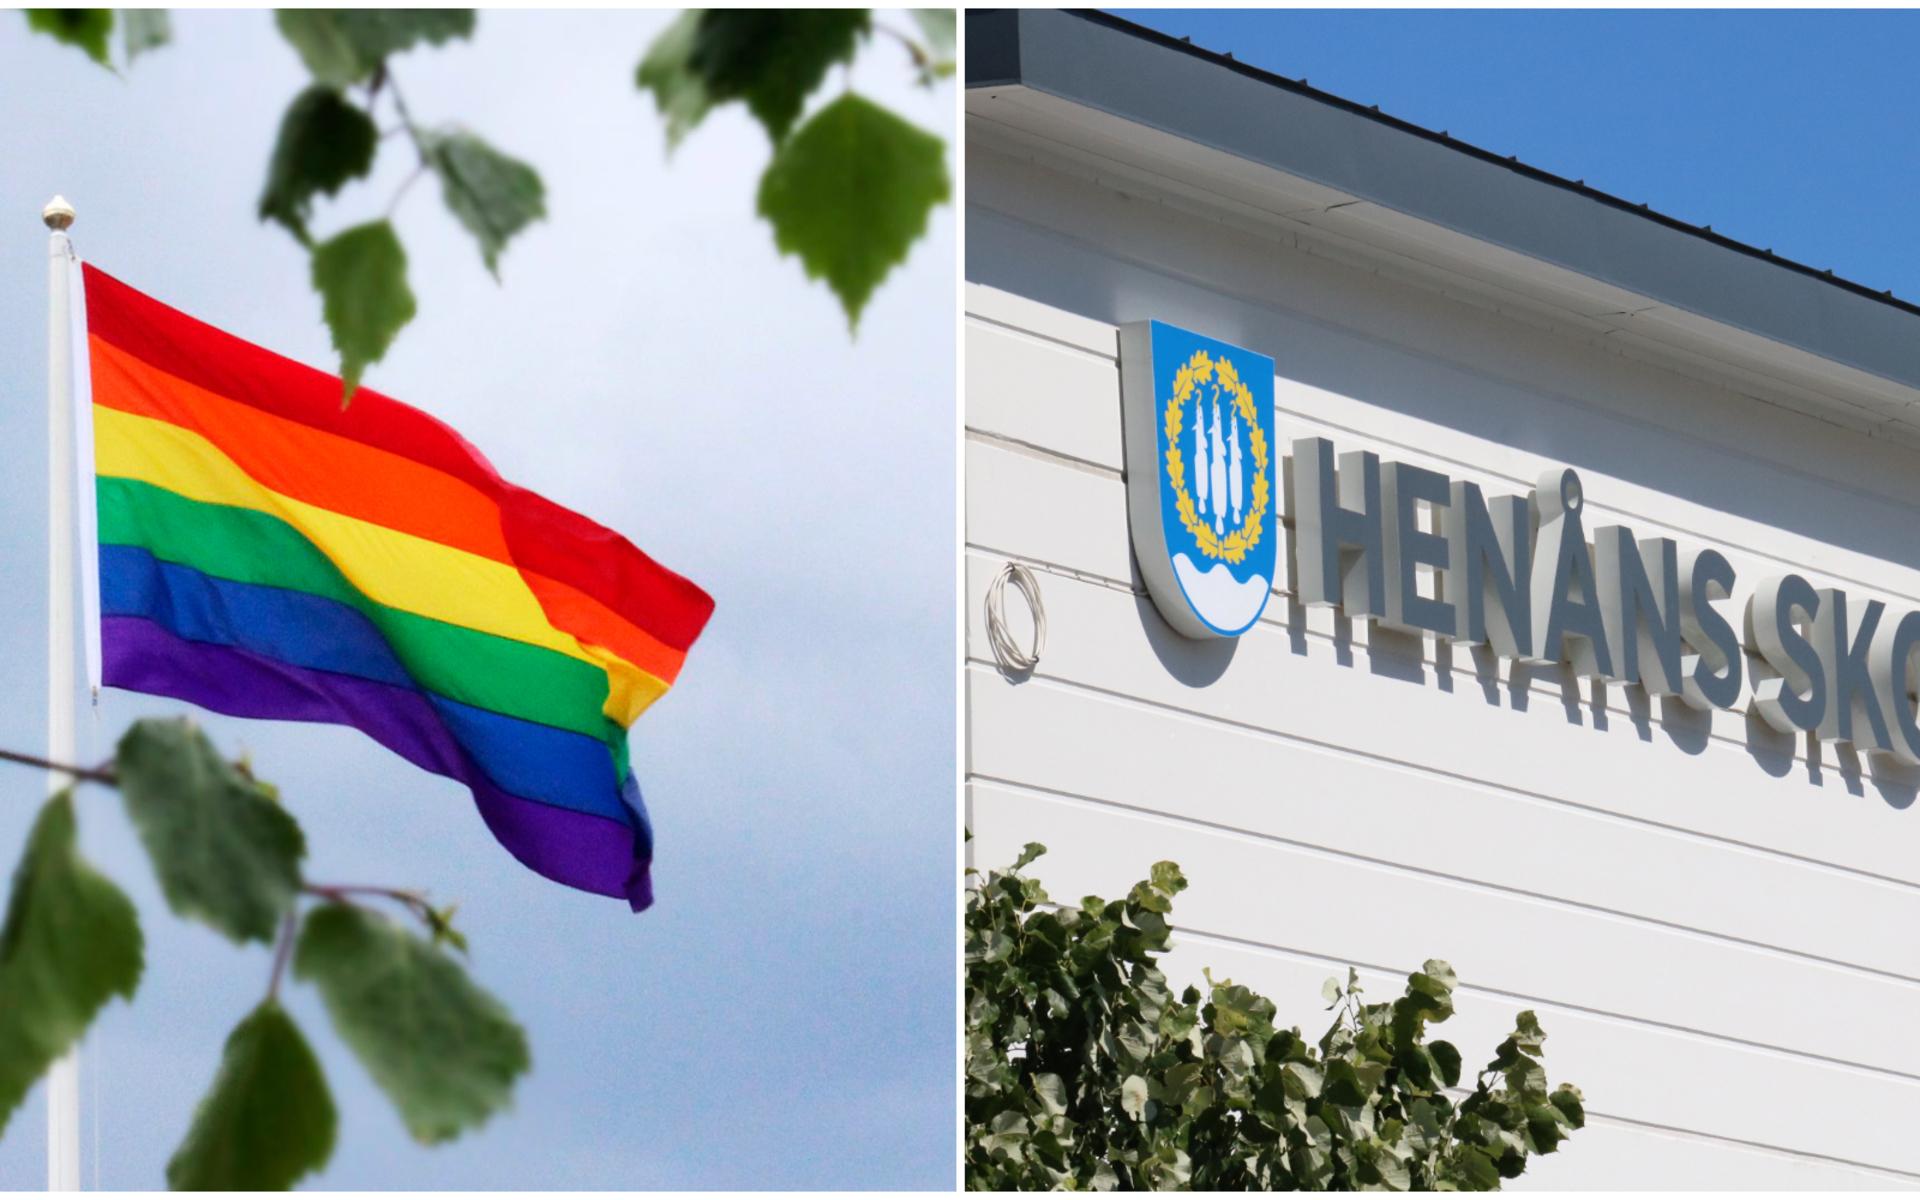 Prideflaggan har varit hissad utanför Henåns skola som en del i skolans värdegrundsarbete. Flaggan har dock fått många Orustbor att reagera. 